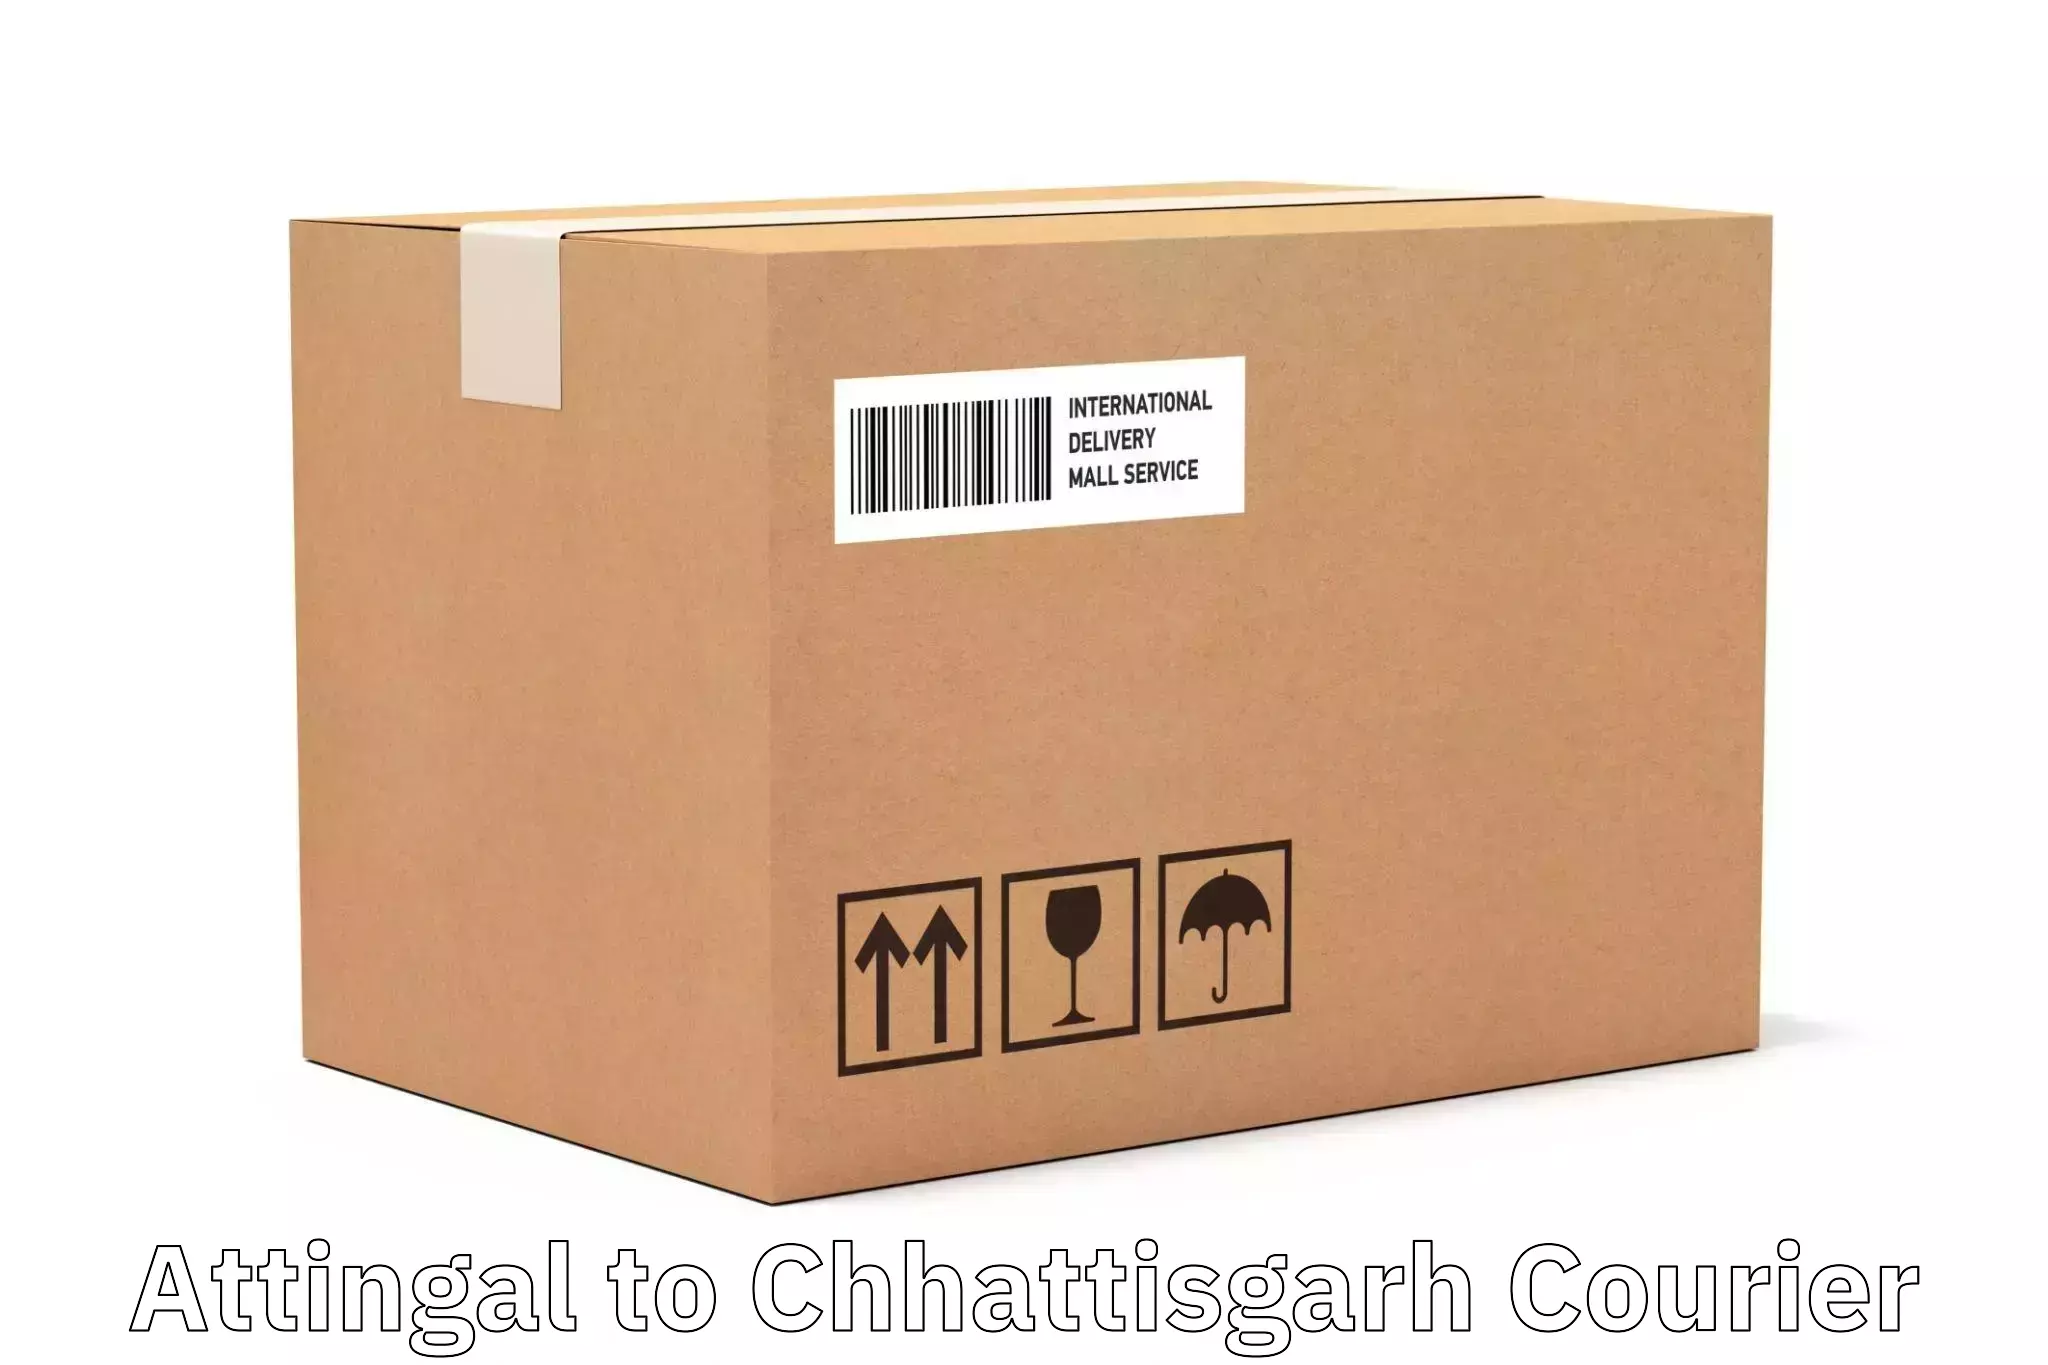 Pharmaceutical courier Attingal to Pathalgaon